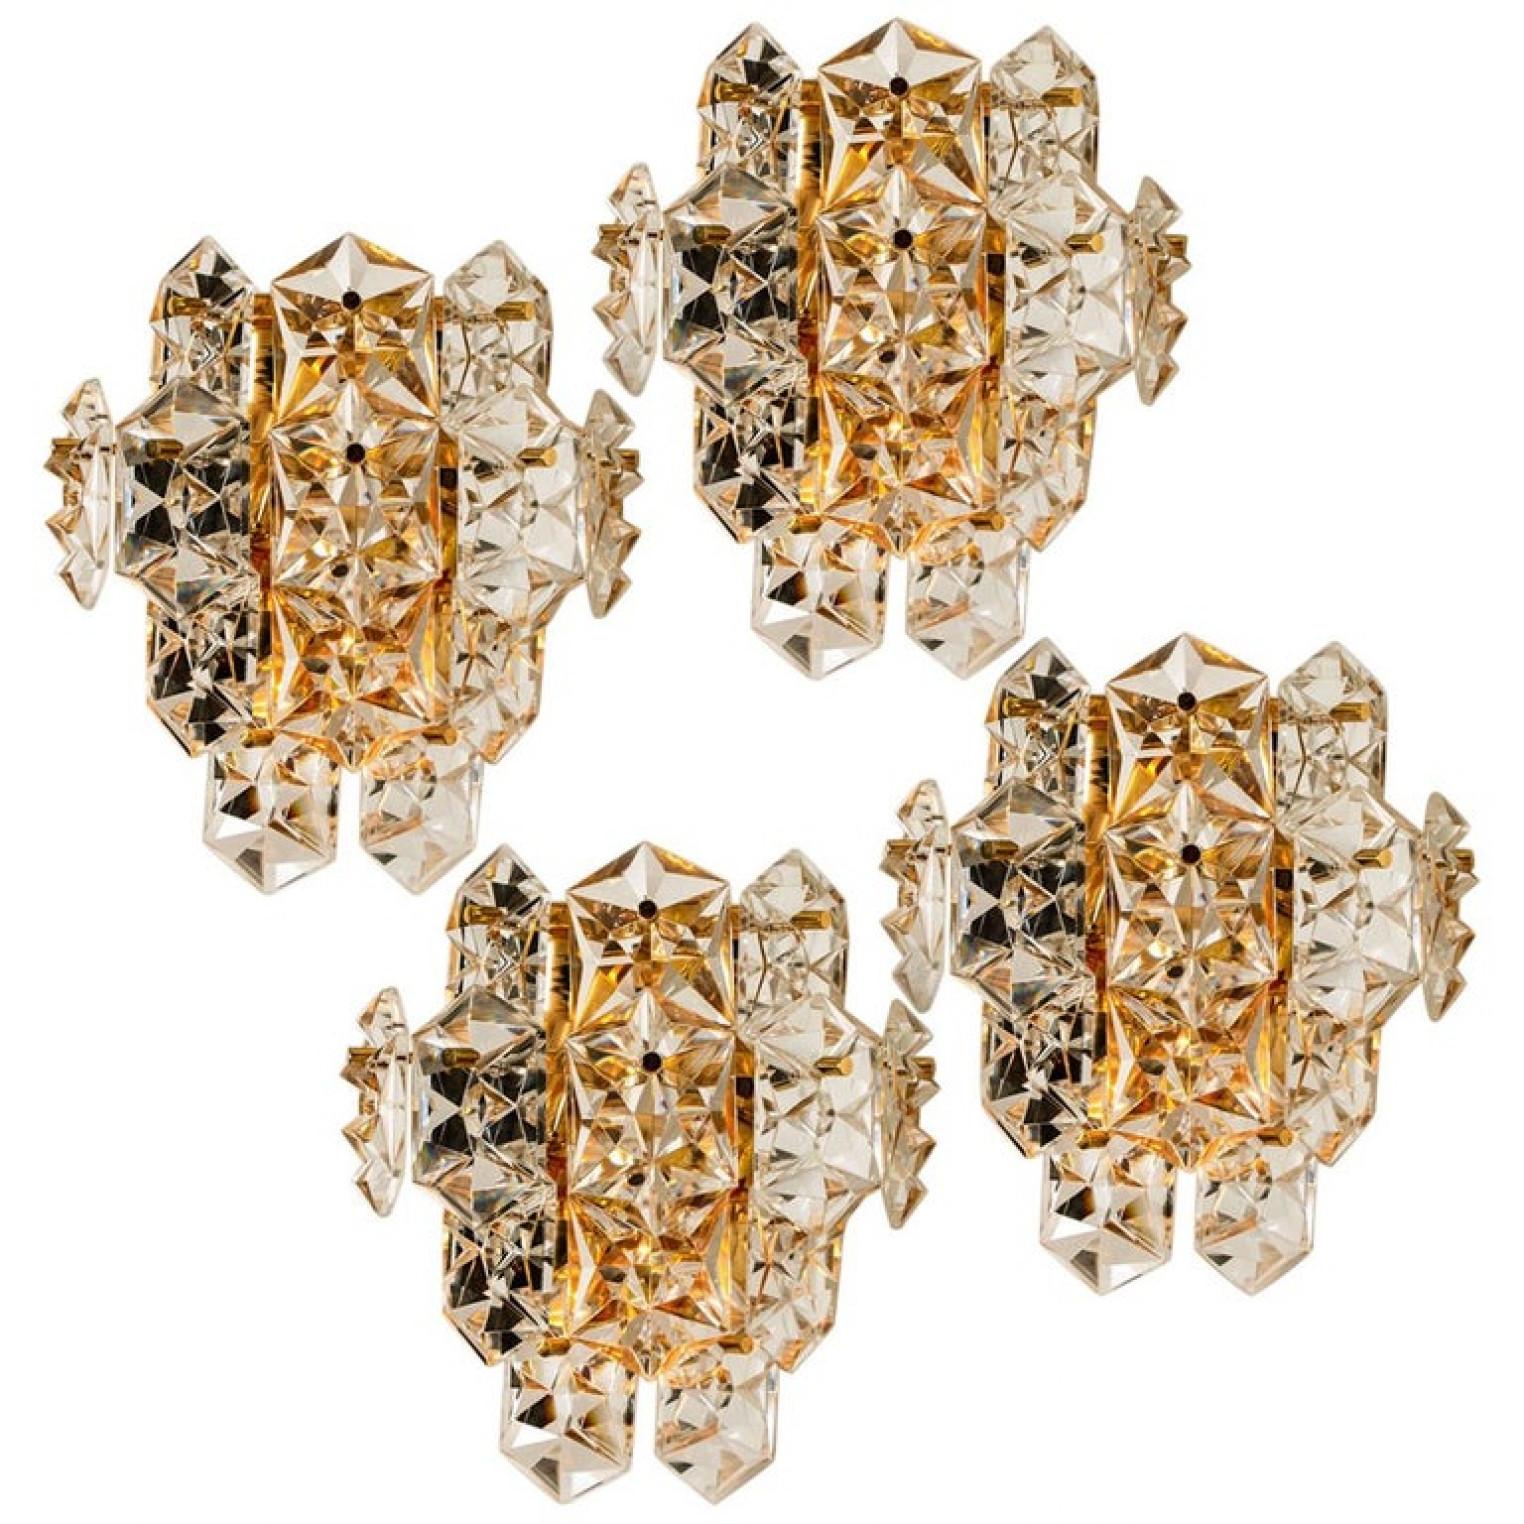 1 des 4 luxueuses paires d'appliques aux cadres plaqués or et au cristal de diamant épais du célèbre fabricant Kinkeldey. Des luminaires très élégants, qui s'adaptent à toutes les époques de décoration. Les cristaux sont méticuleusement taillés de